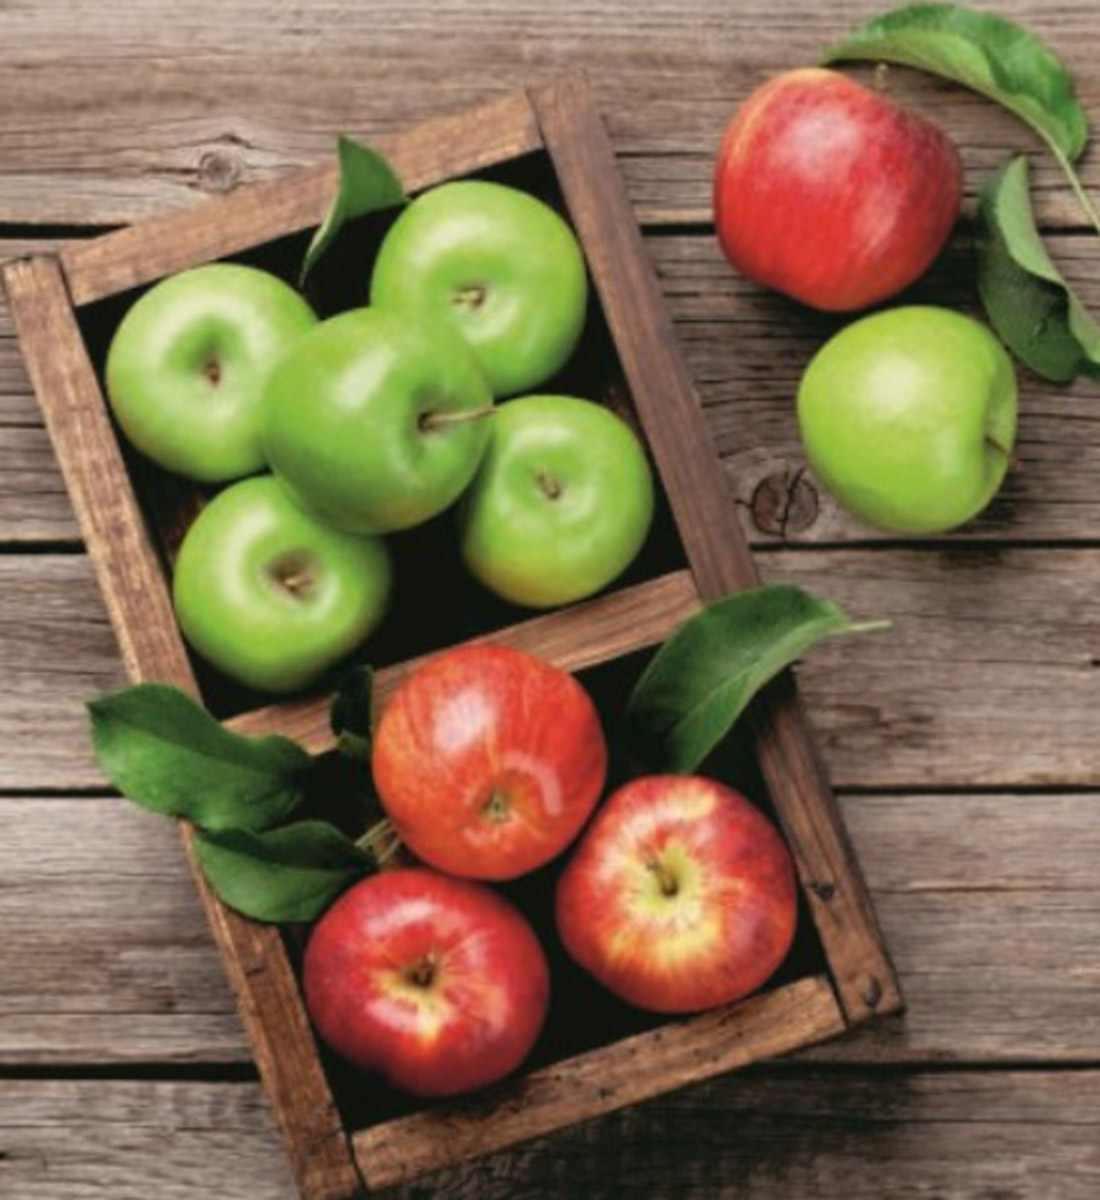 τα πράσινα μήλα βοηθούν στην απώλεια βάρους στρατόπεδο απώλειας βάρους στο Ώκλαντ